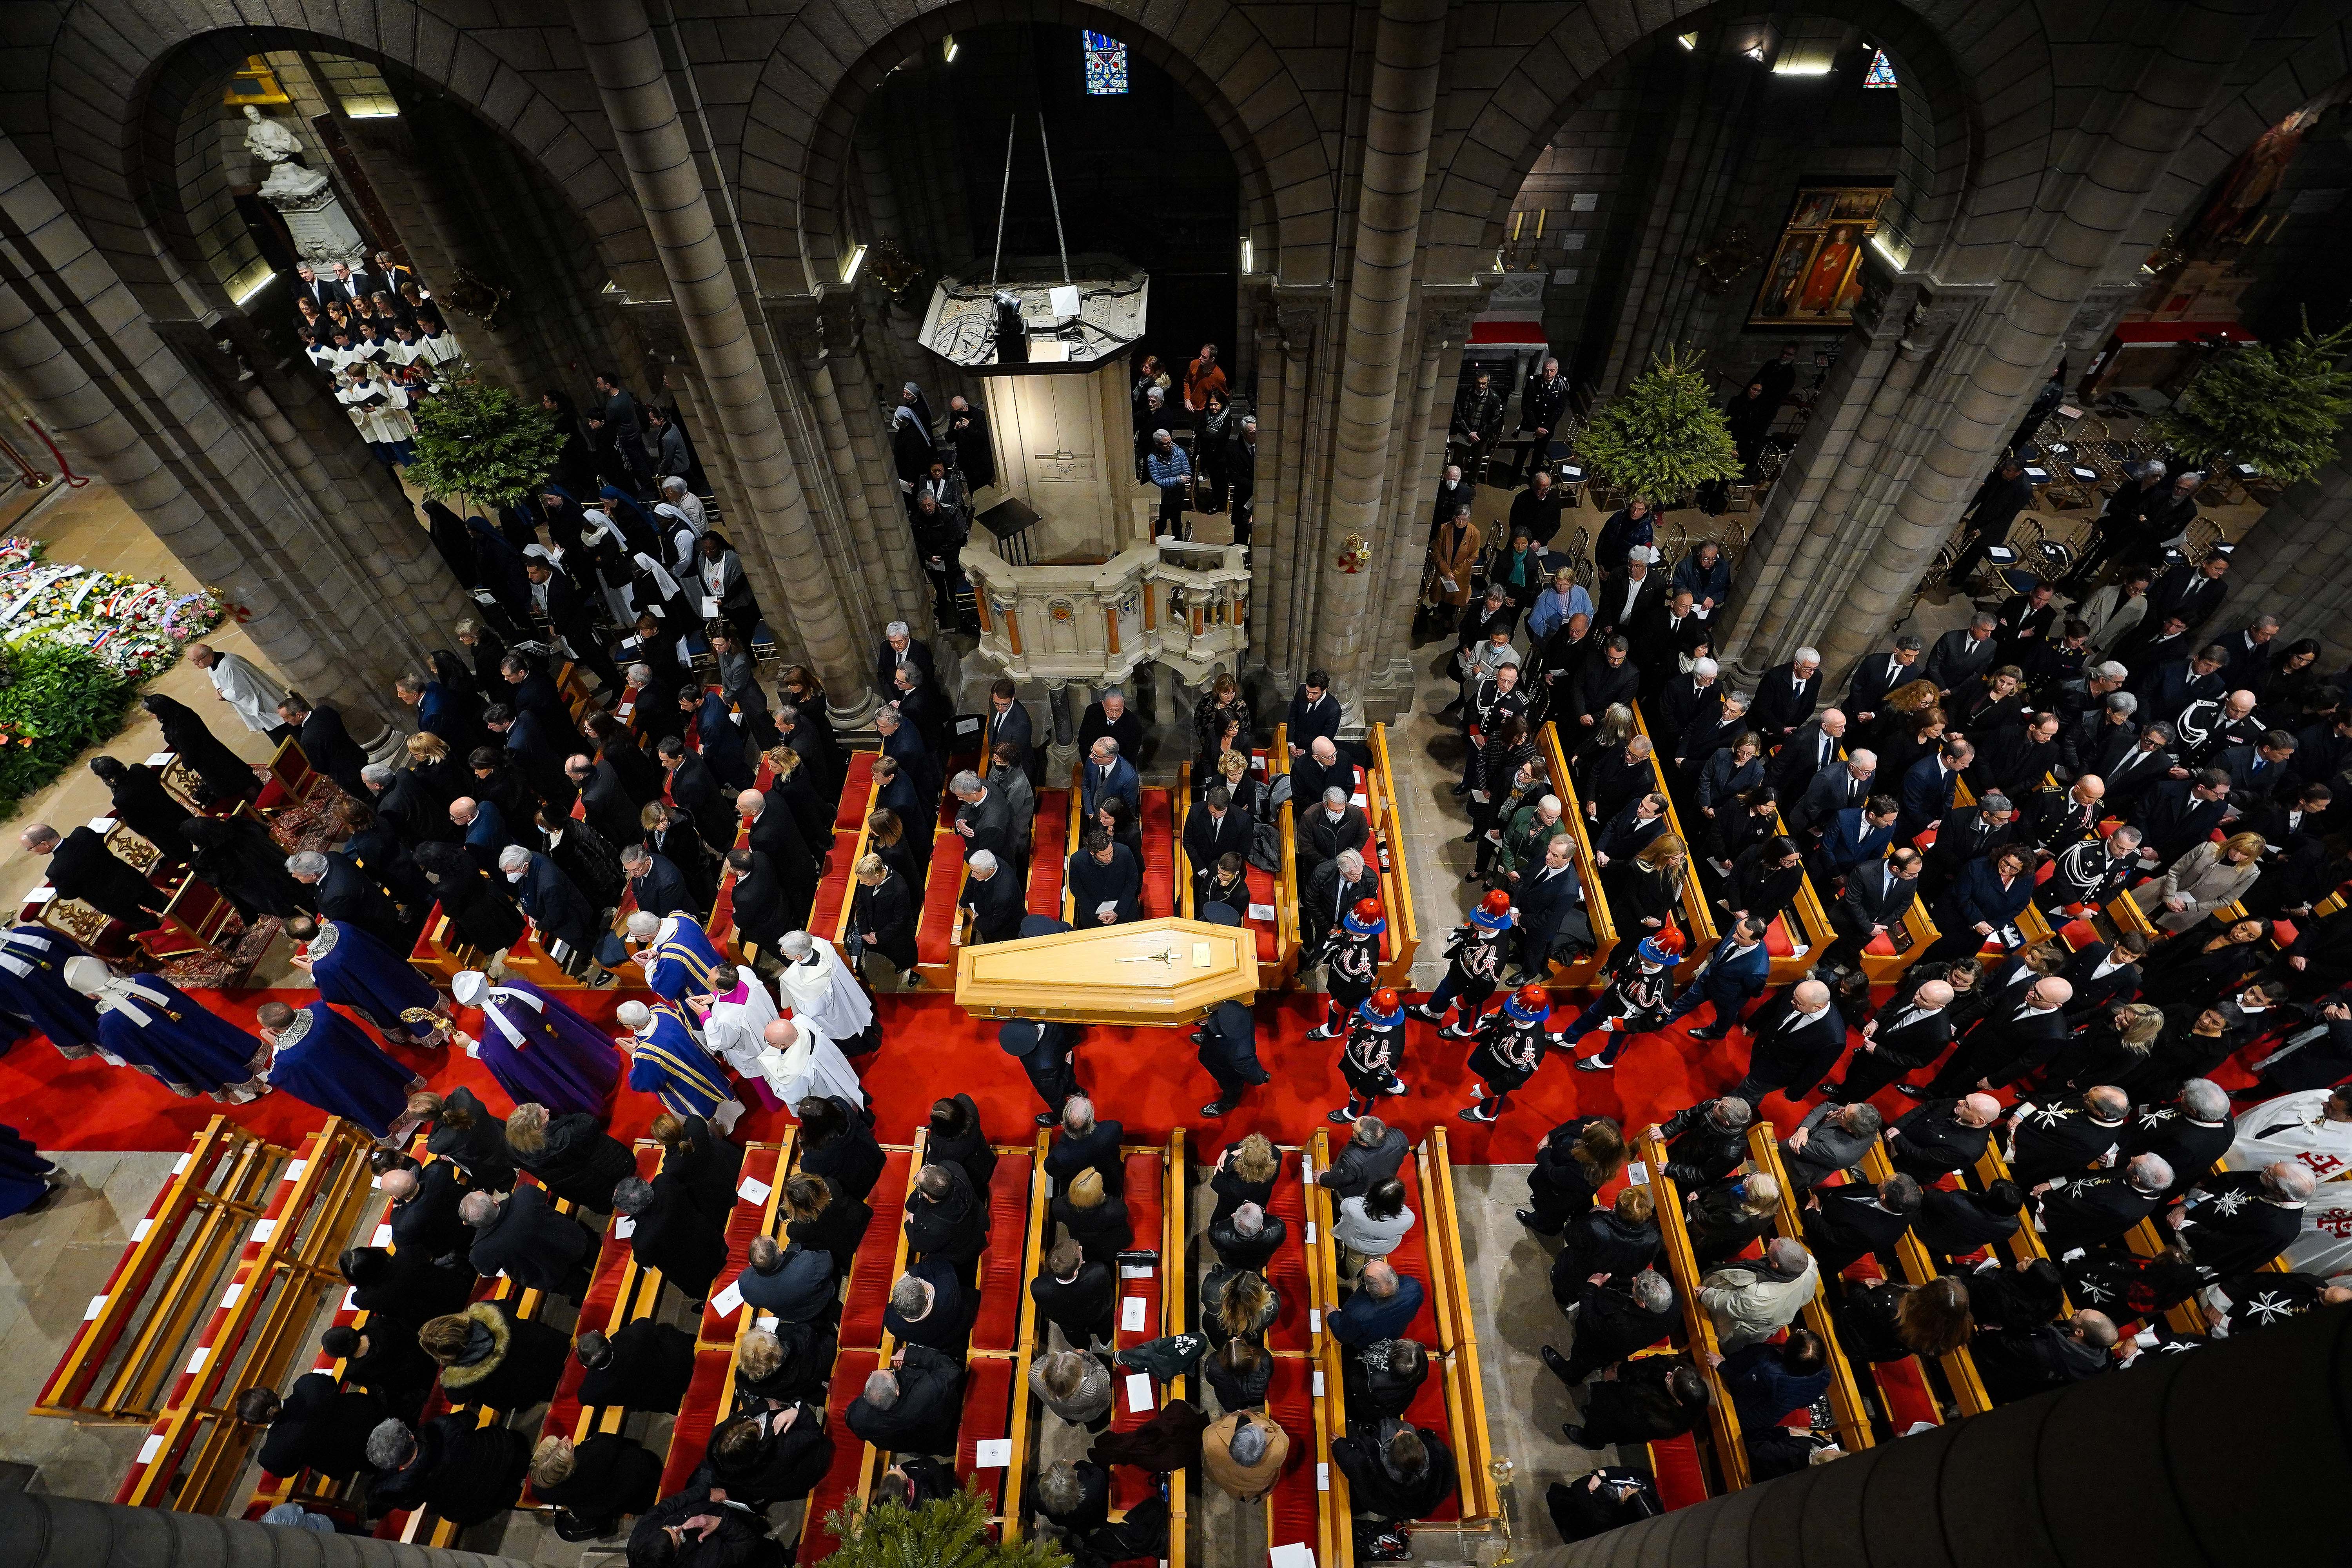 Les obsèques de Mgr Barsi dans la cathédrale de Monaco ce 4 janvier 2023 - Direction de la Communication / Michael Alesi & Stéphane Danna